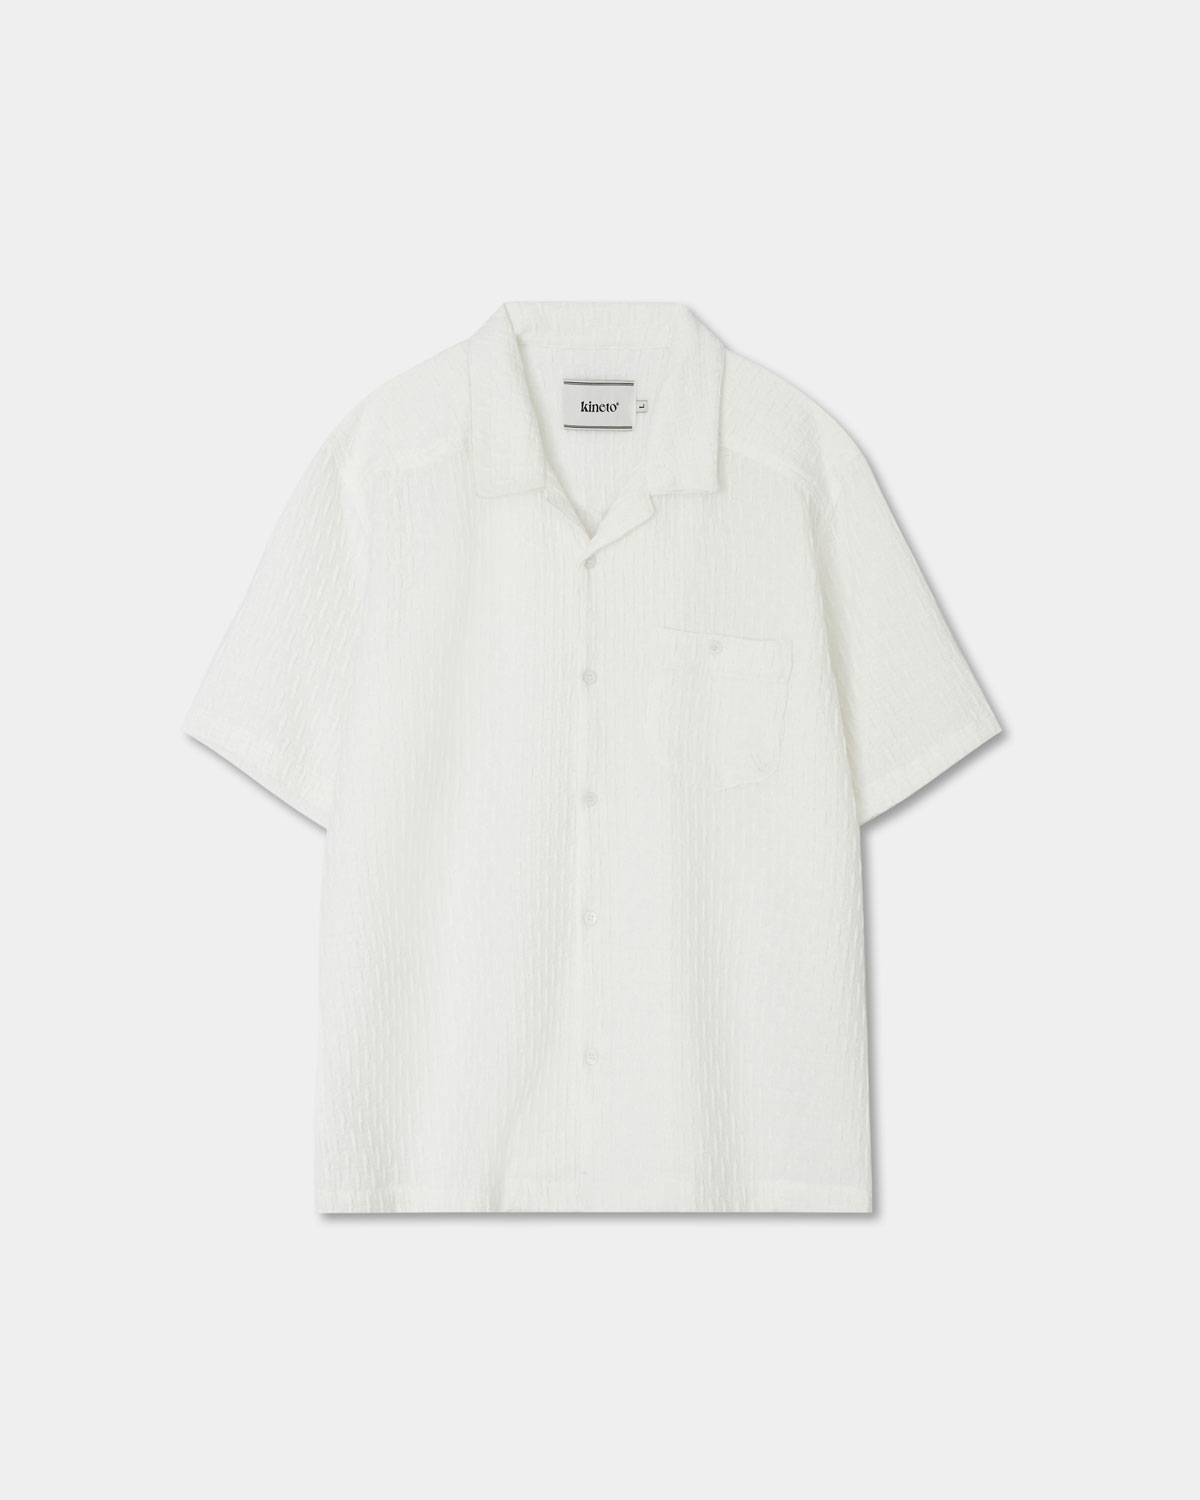 Wrinkle Emboss Open Collar Shirt_White_W_예약 배송 05/10